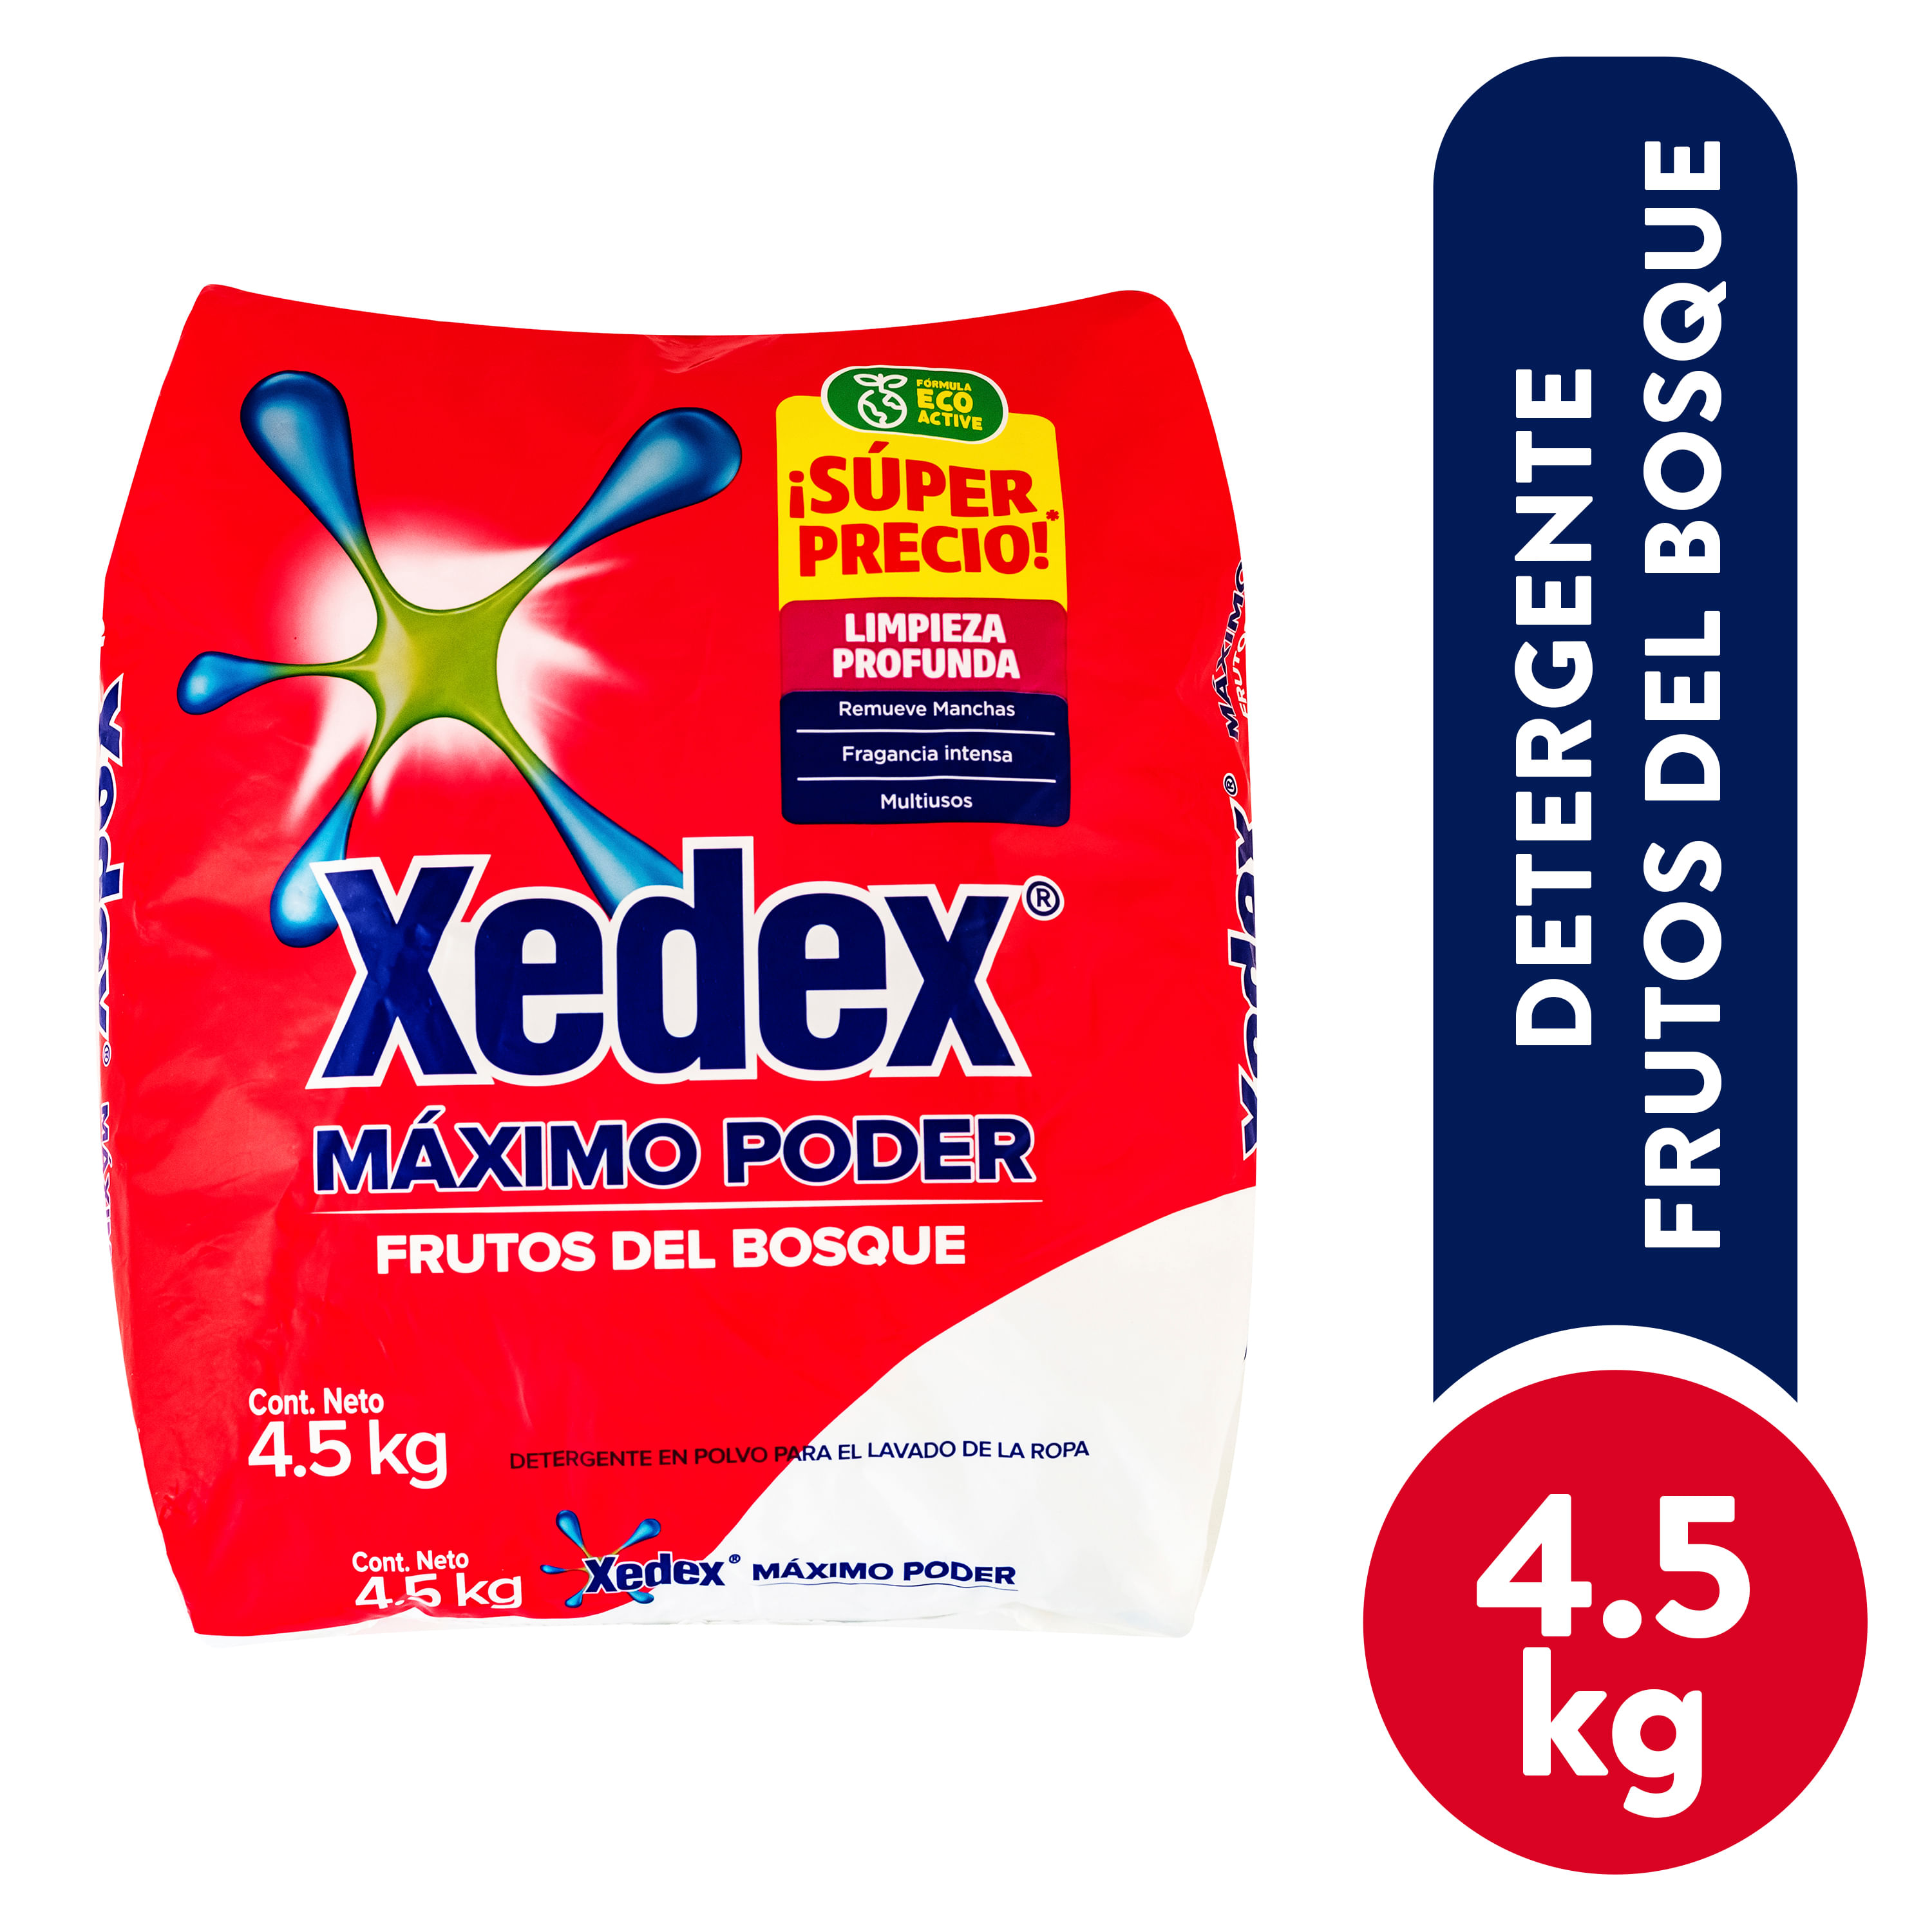 Detergente-en-polvo-Xedex-Max-poder-frutos-4500g-1-26614